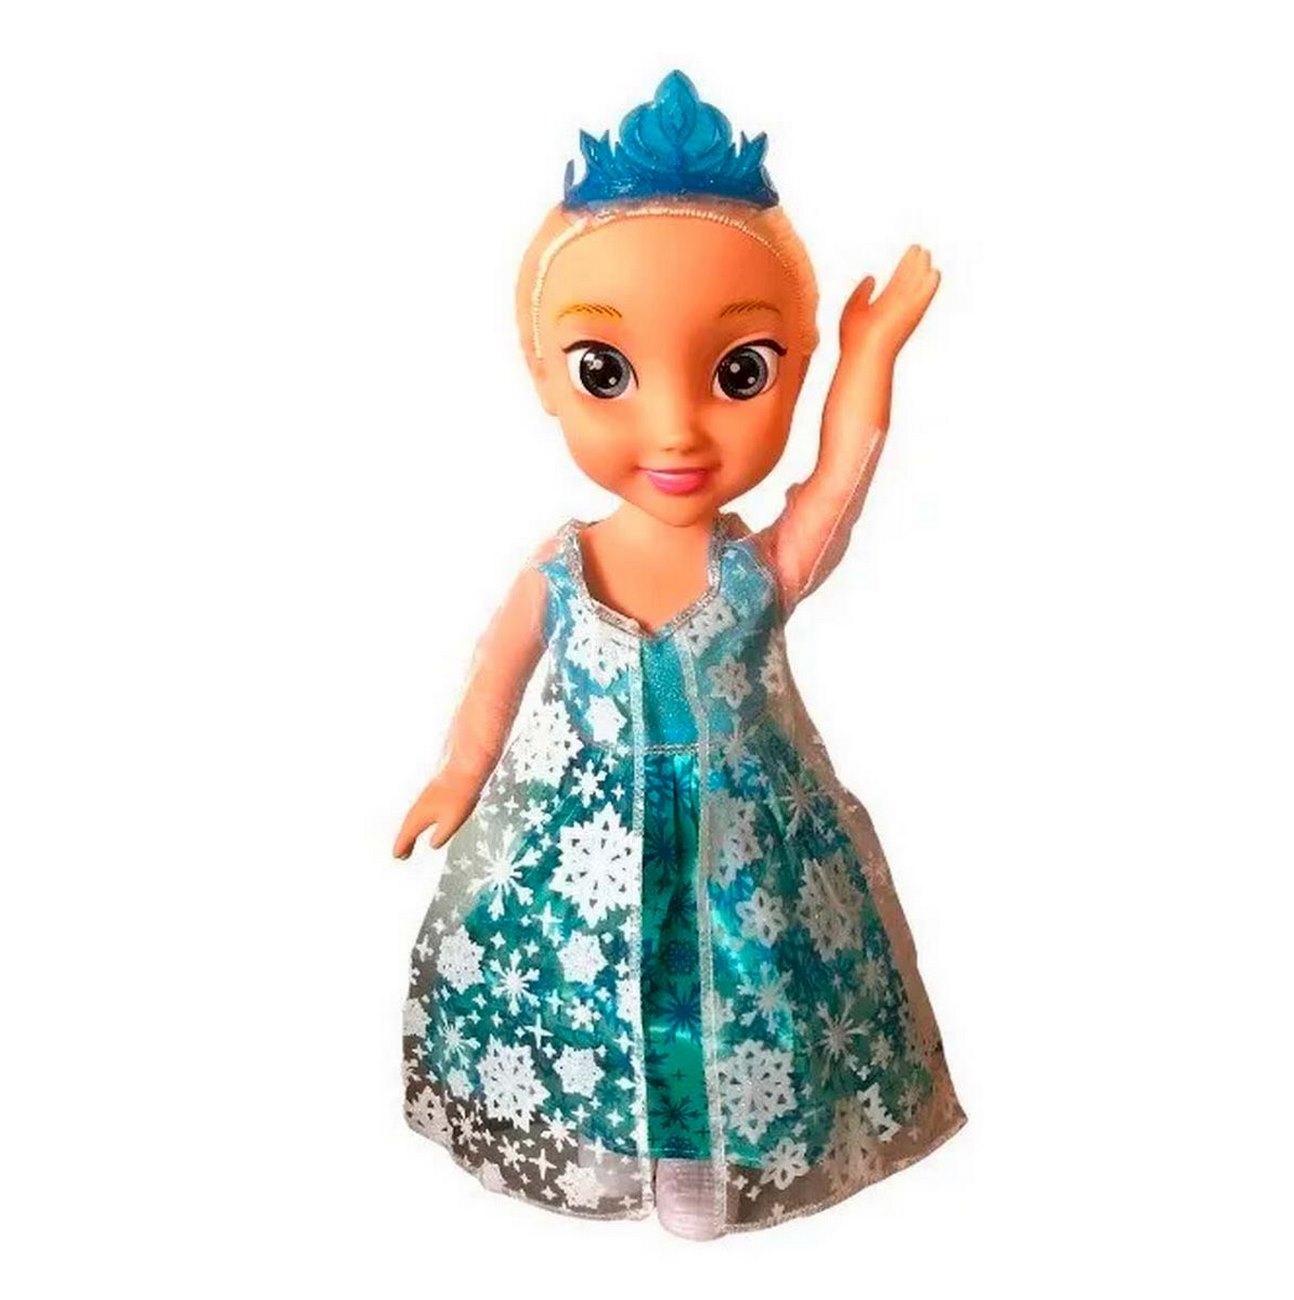 Muñeca Princesa Elsa - Frozen (canta Libre Soy)